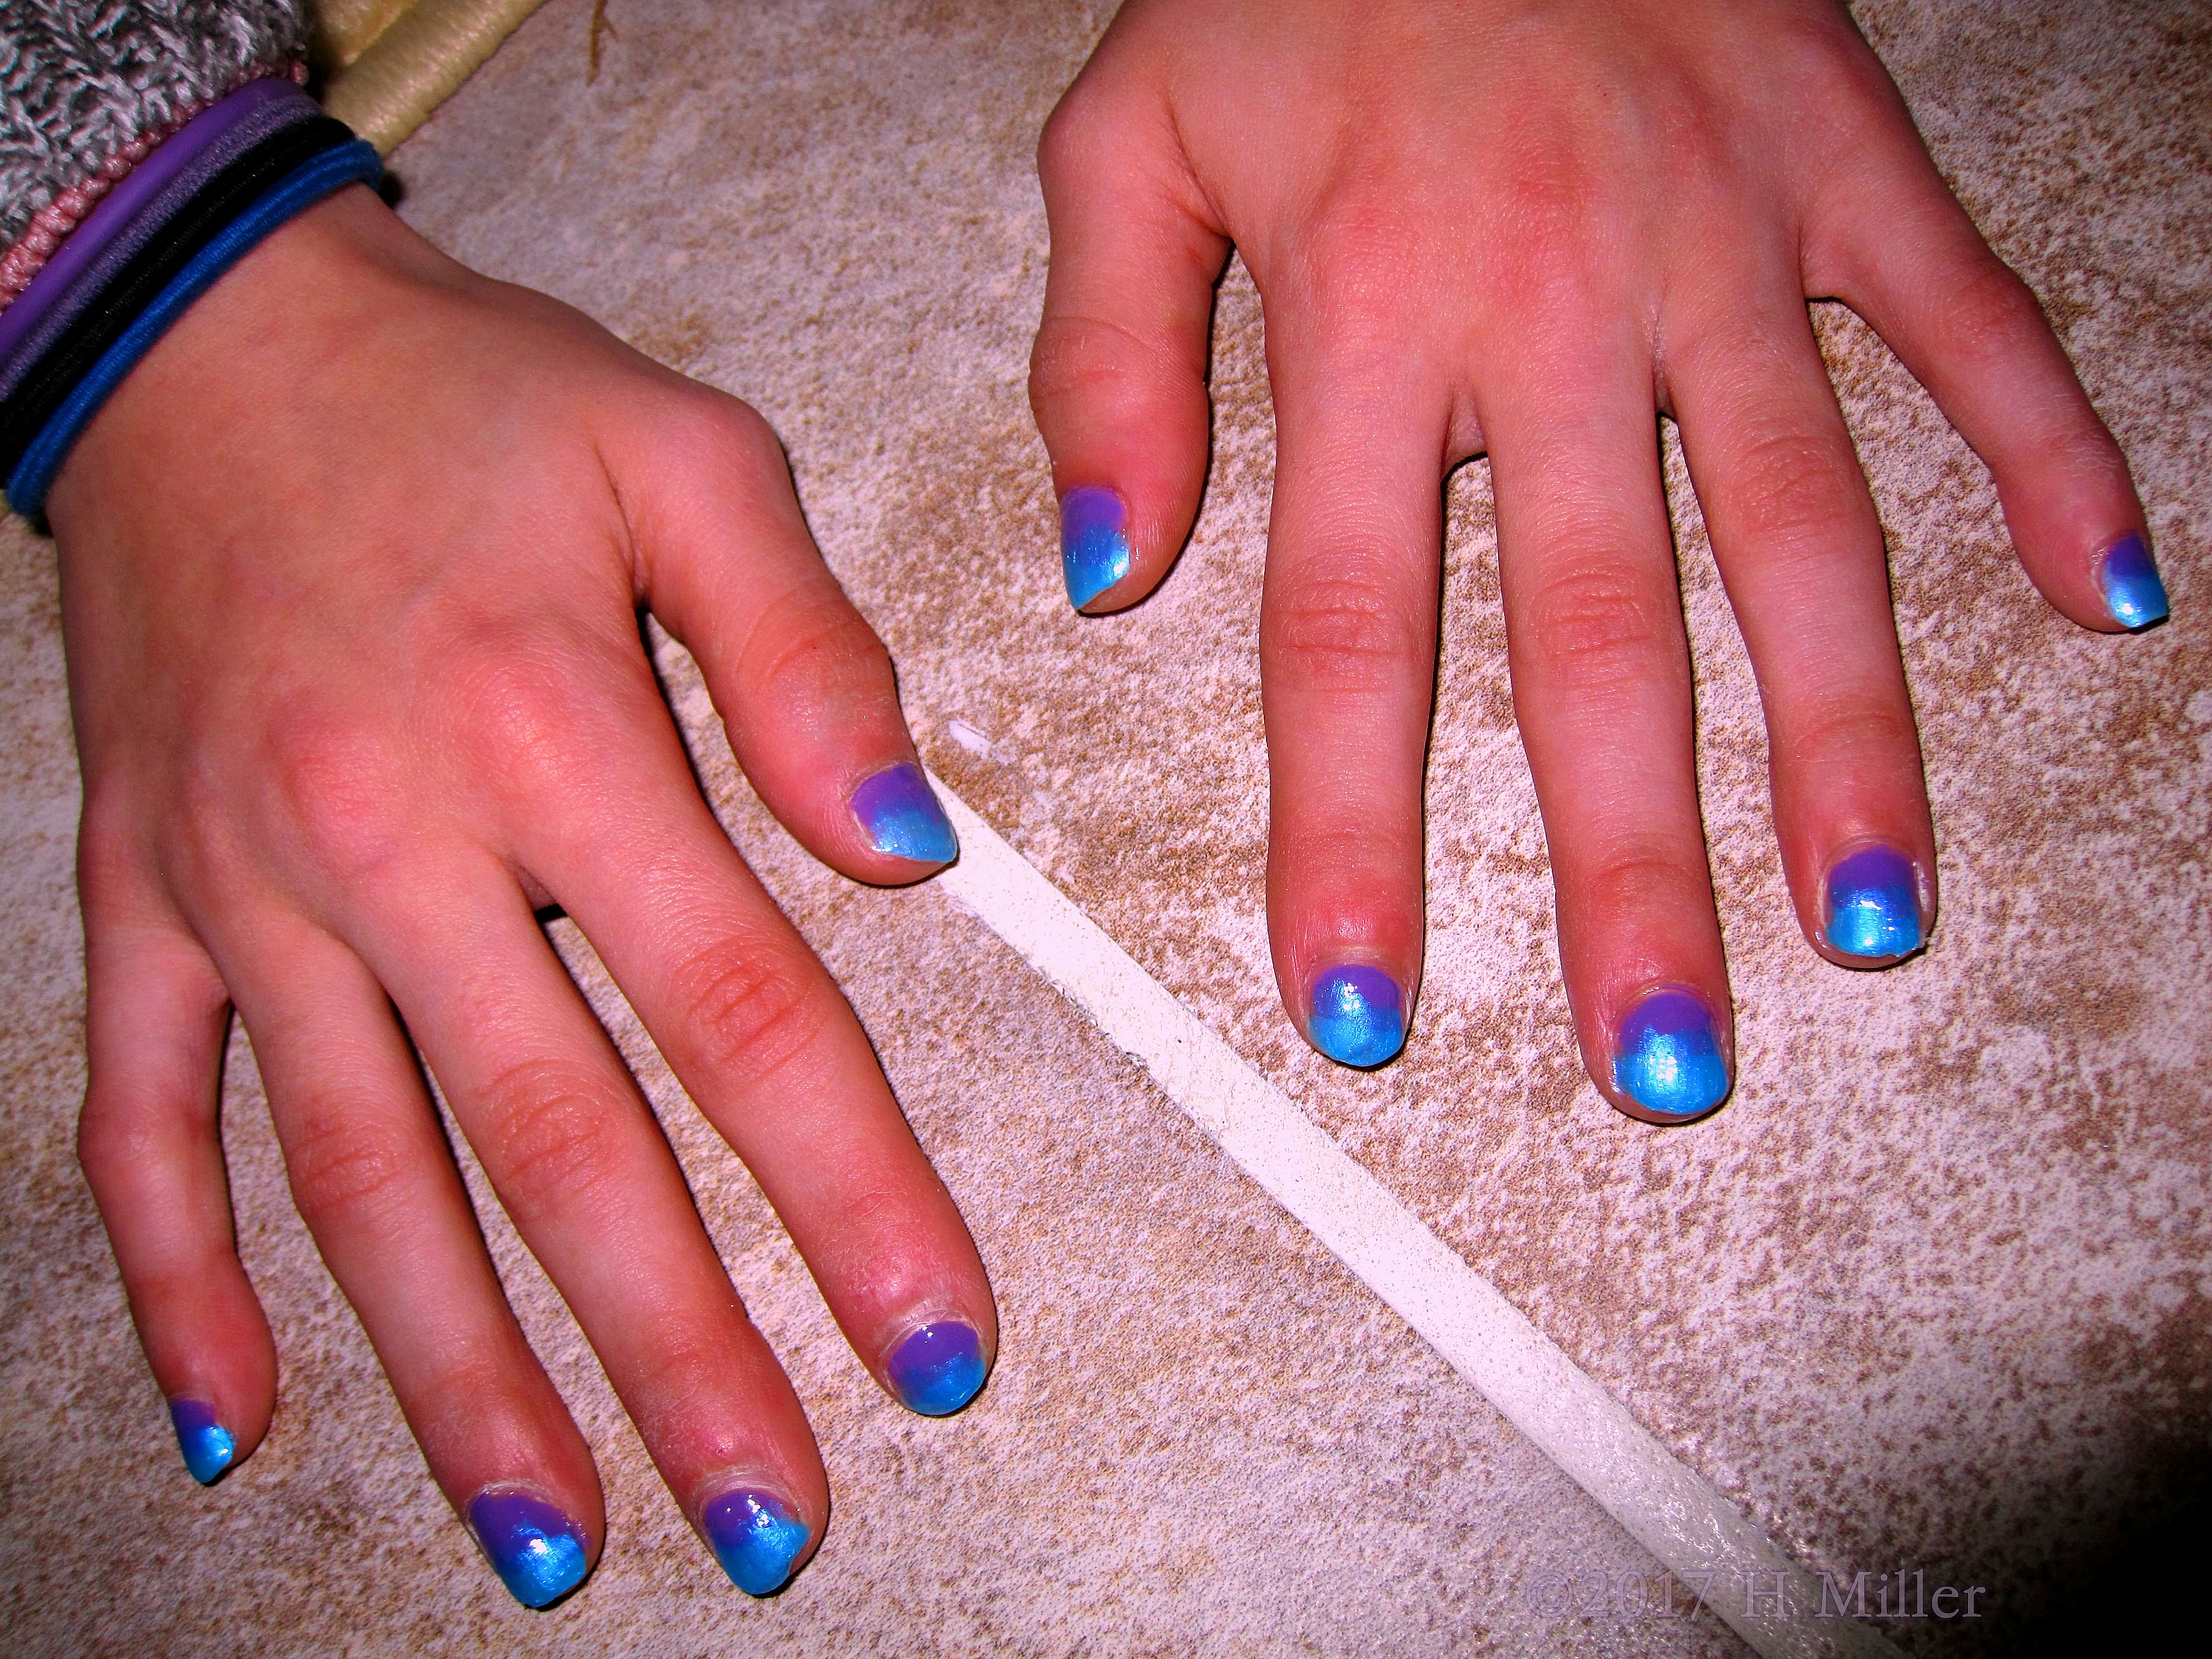 Closeup Of A Very Pretty Blue And Purple Mini Manicure.